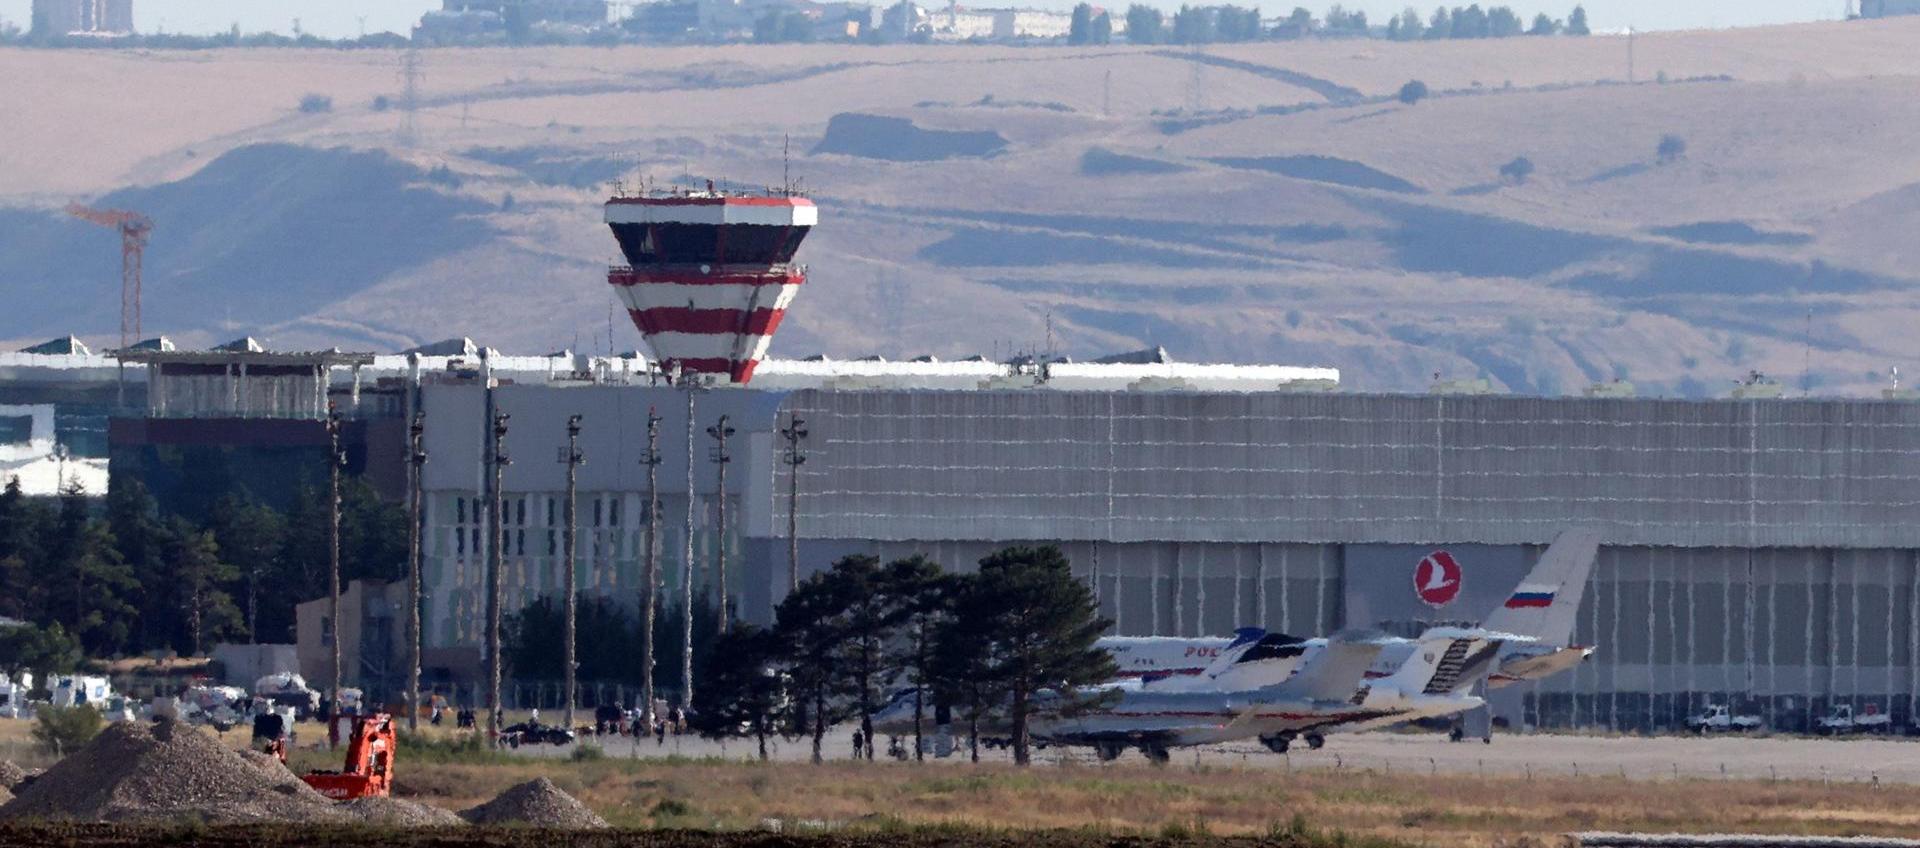 Un avión del gobierno ruso y aviones privados se ven en el Aeropuerto Esenboga en Ankara, Turquía, donde se realizó intercambio.